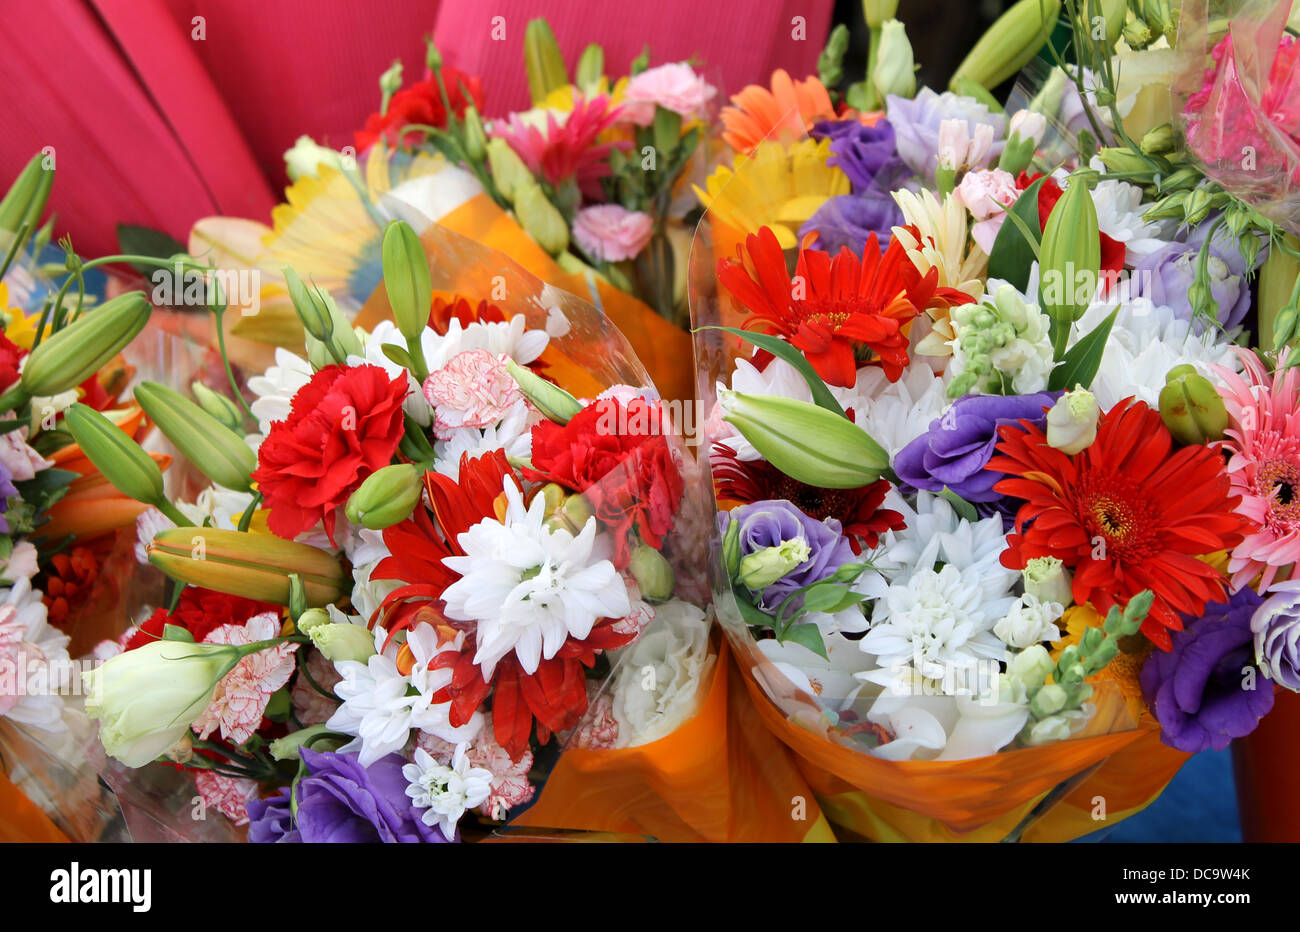 Bunte Blumensträuße am Marktstand. Stockfoto